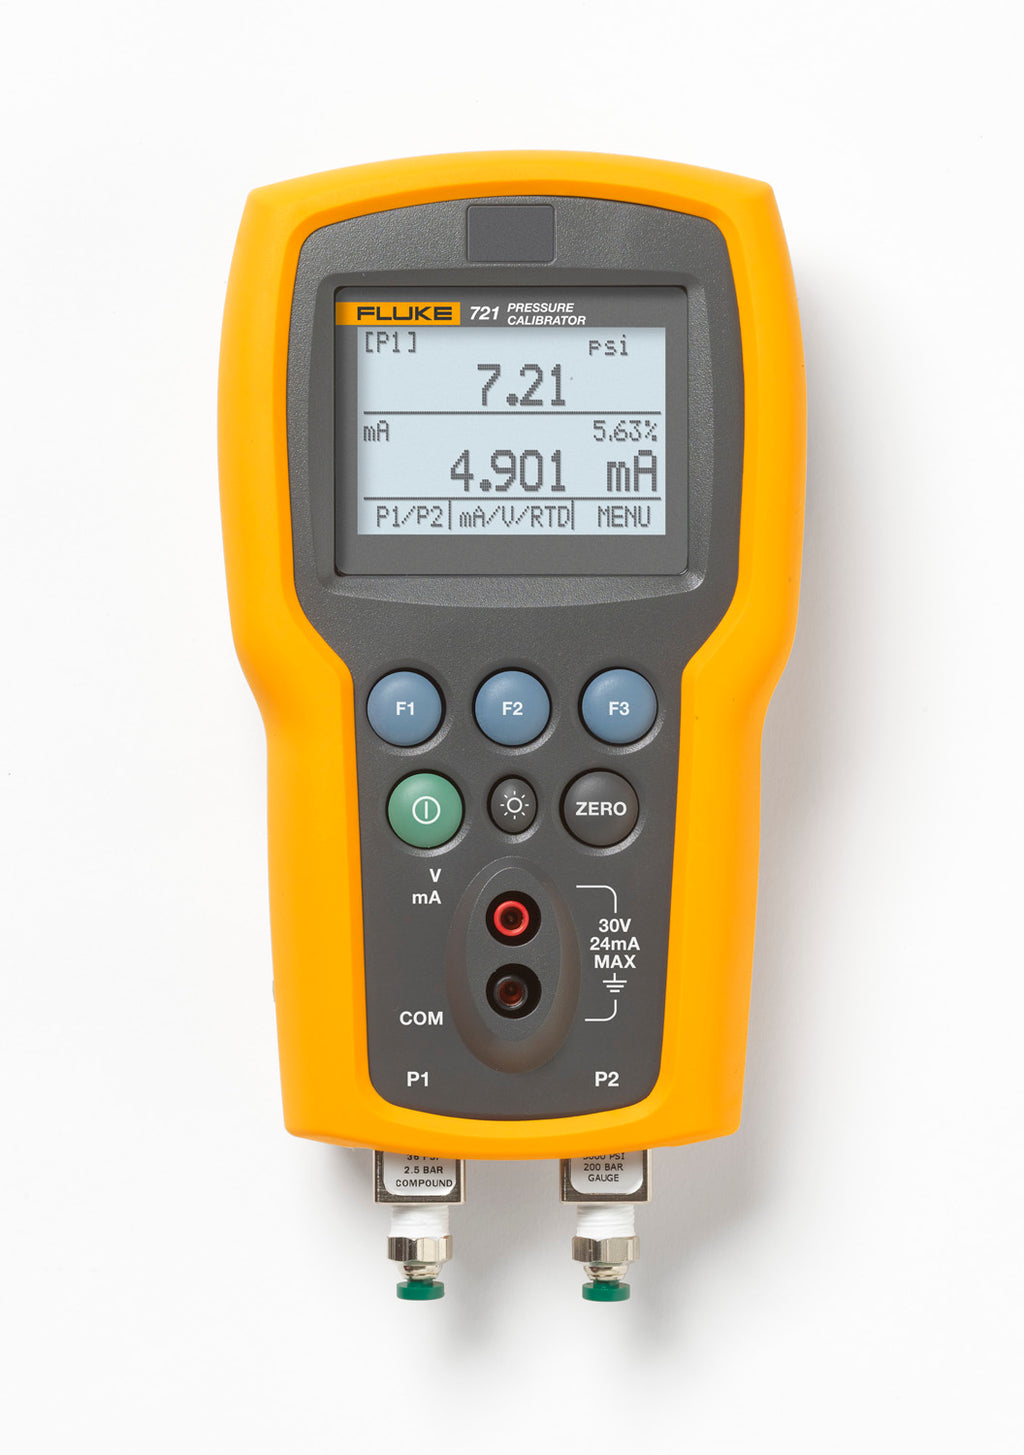 Fluke 721 Pressure Calibration Instrument